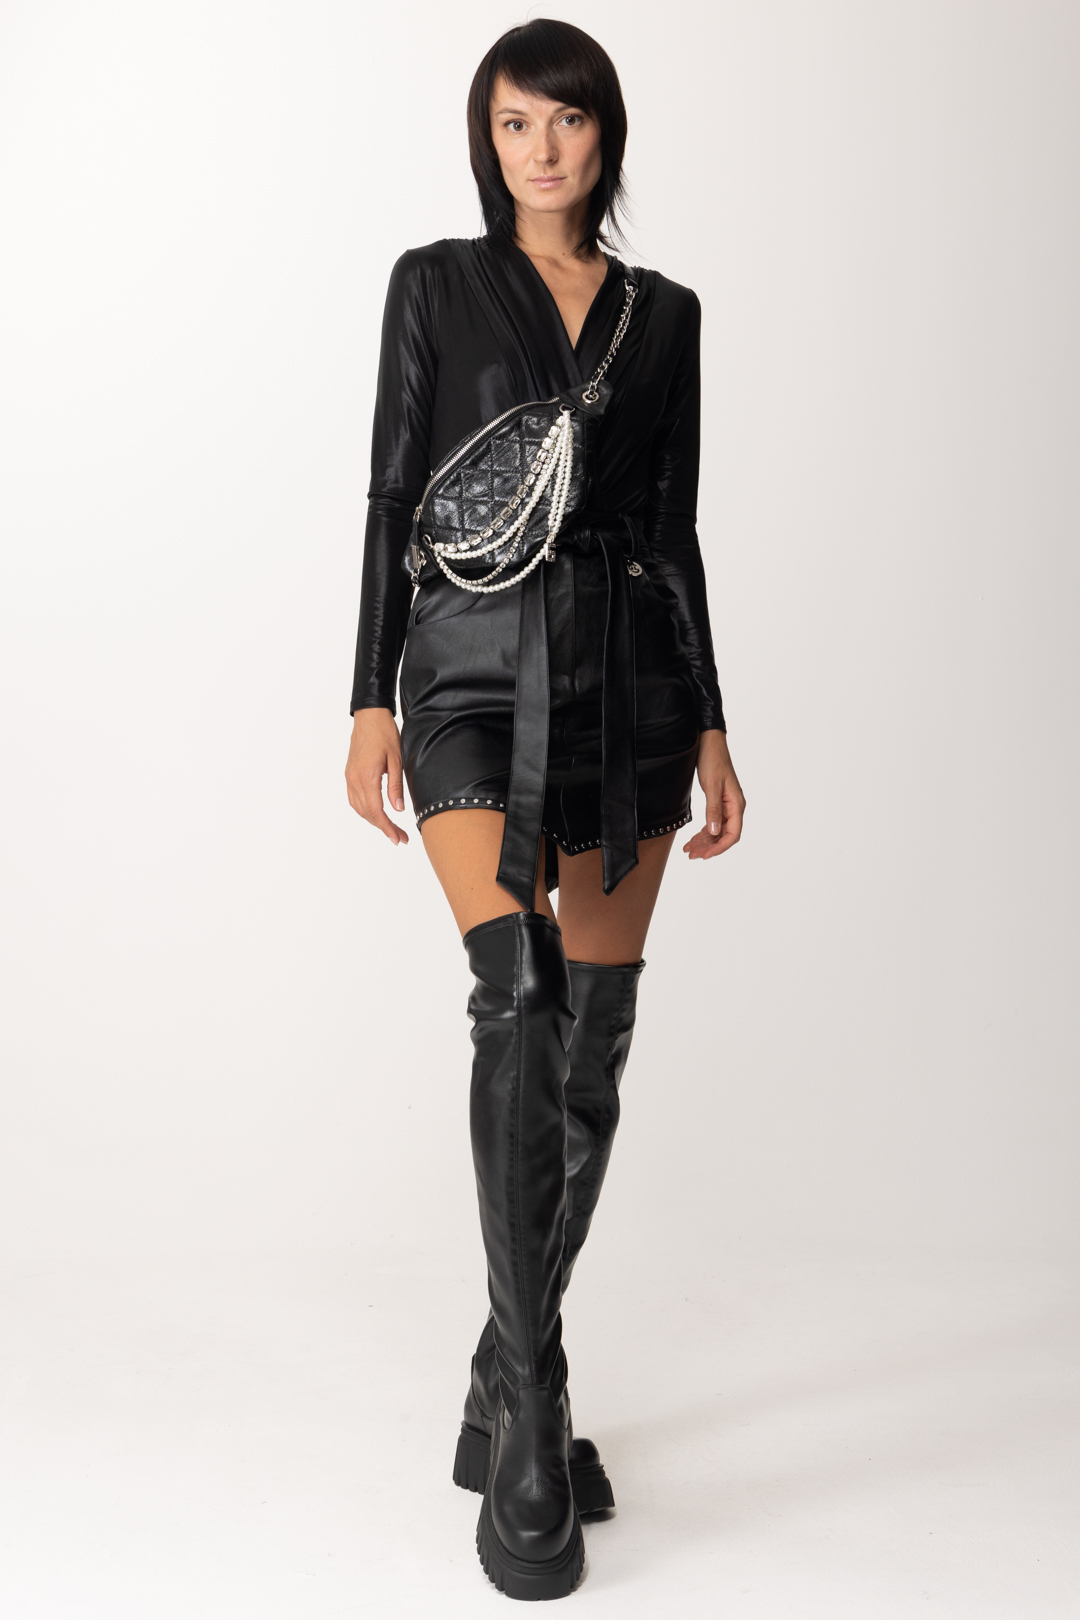 Aperçu: Gaelle Paris Mini-jupe en cuir avec clous et ceinture Nero